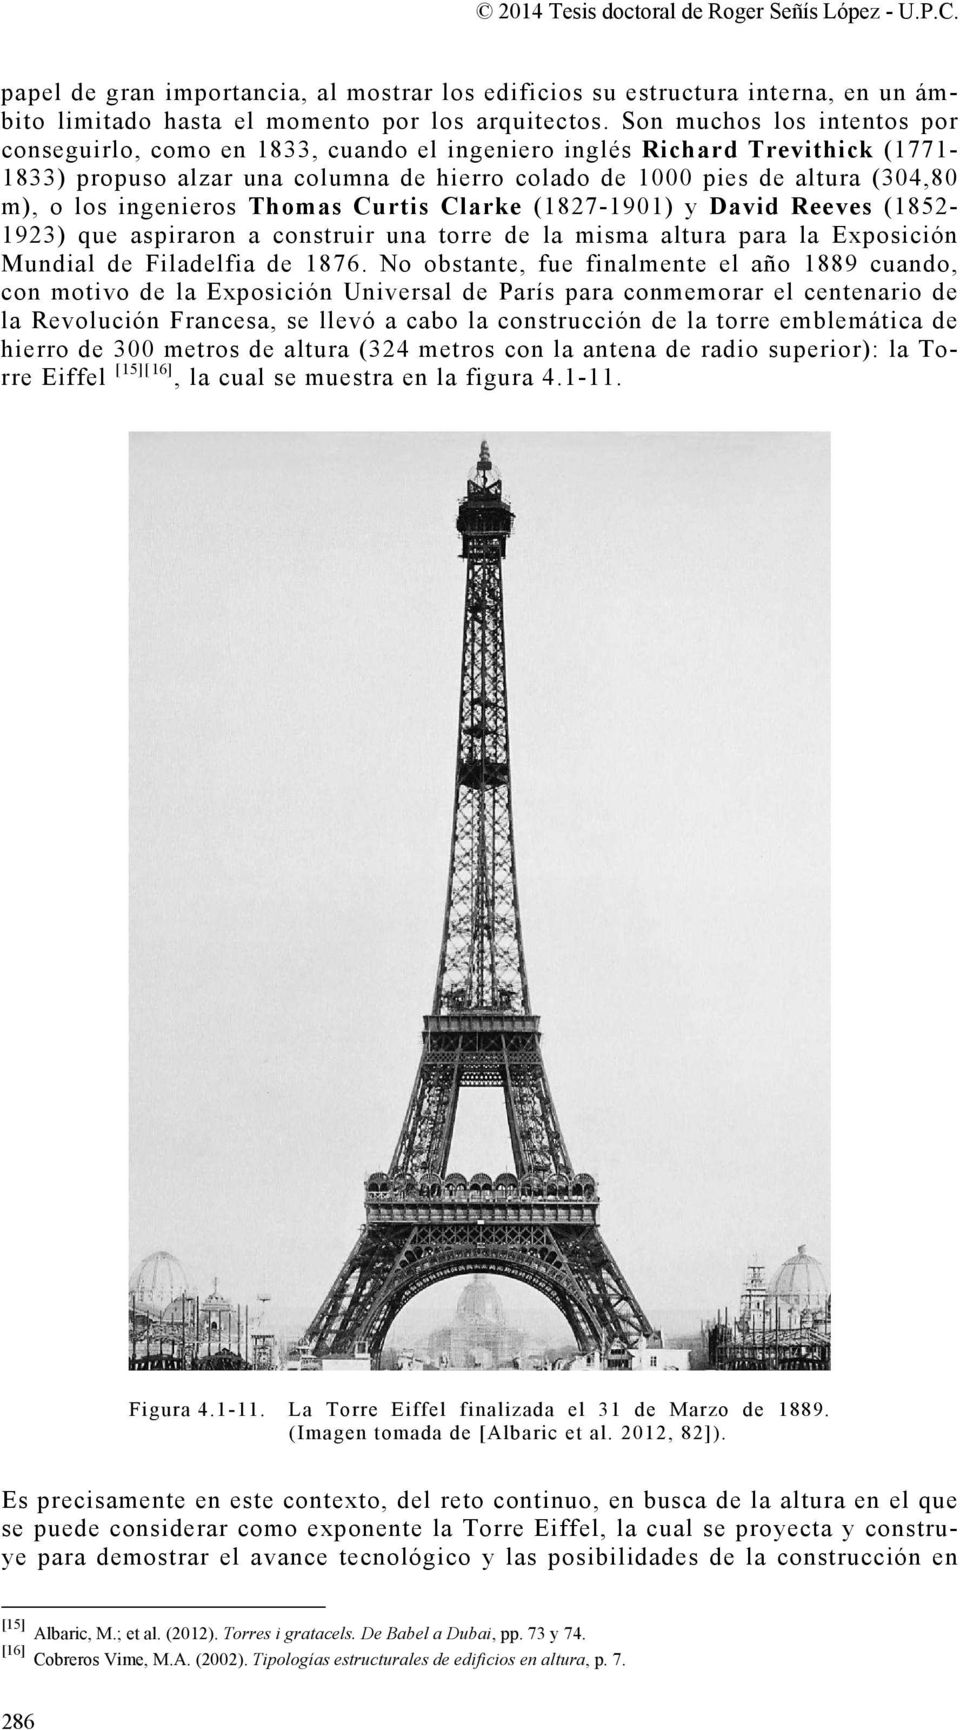 ingenieros Thomas Curtis Clarke (1827-1901) y David Reeves (1852-1923) que aspiraron a construir una torre de la misma altura para la Exposición Mundial de Filadelfia de 1876.